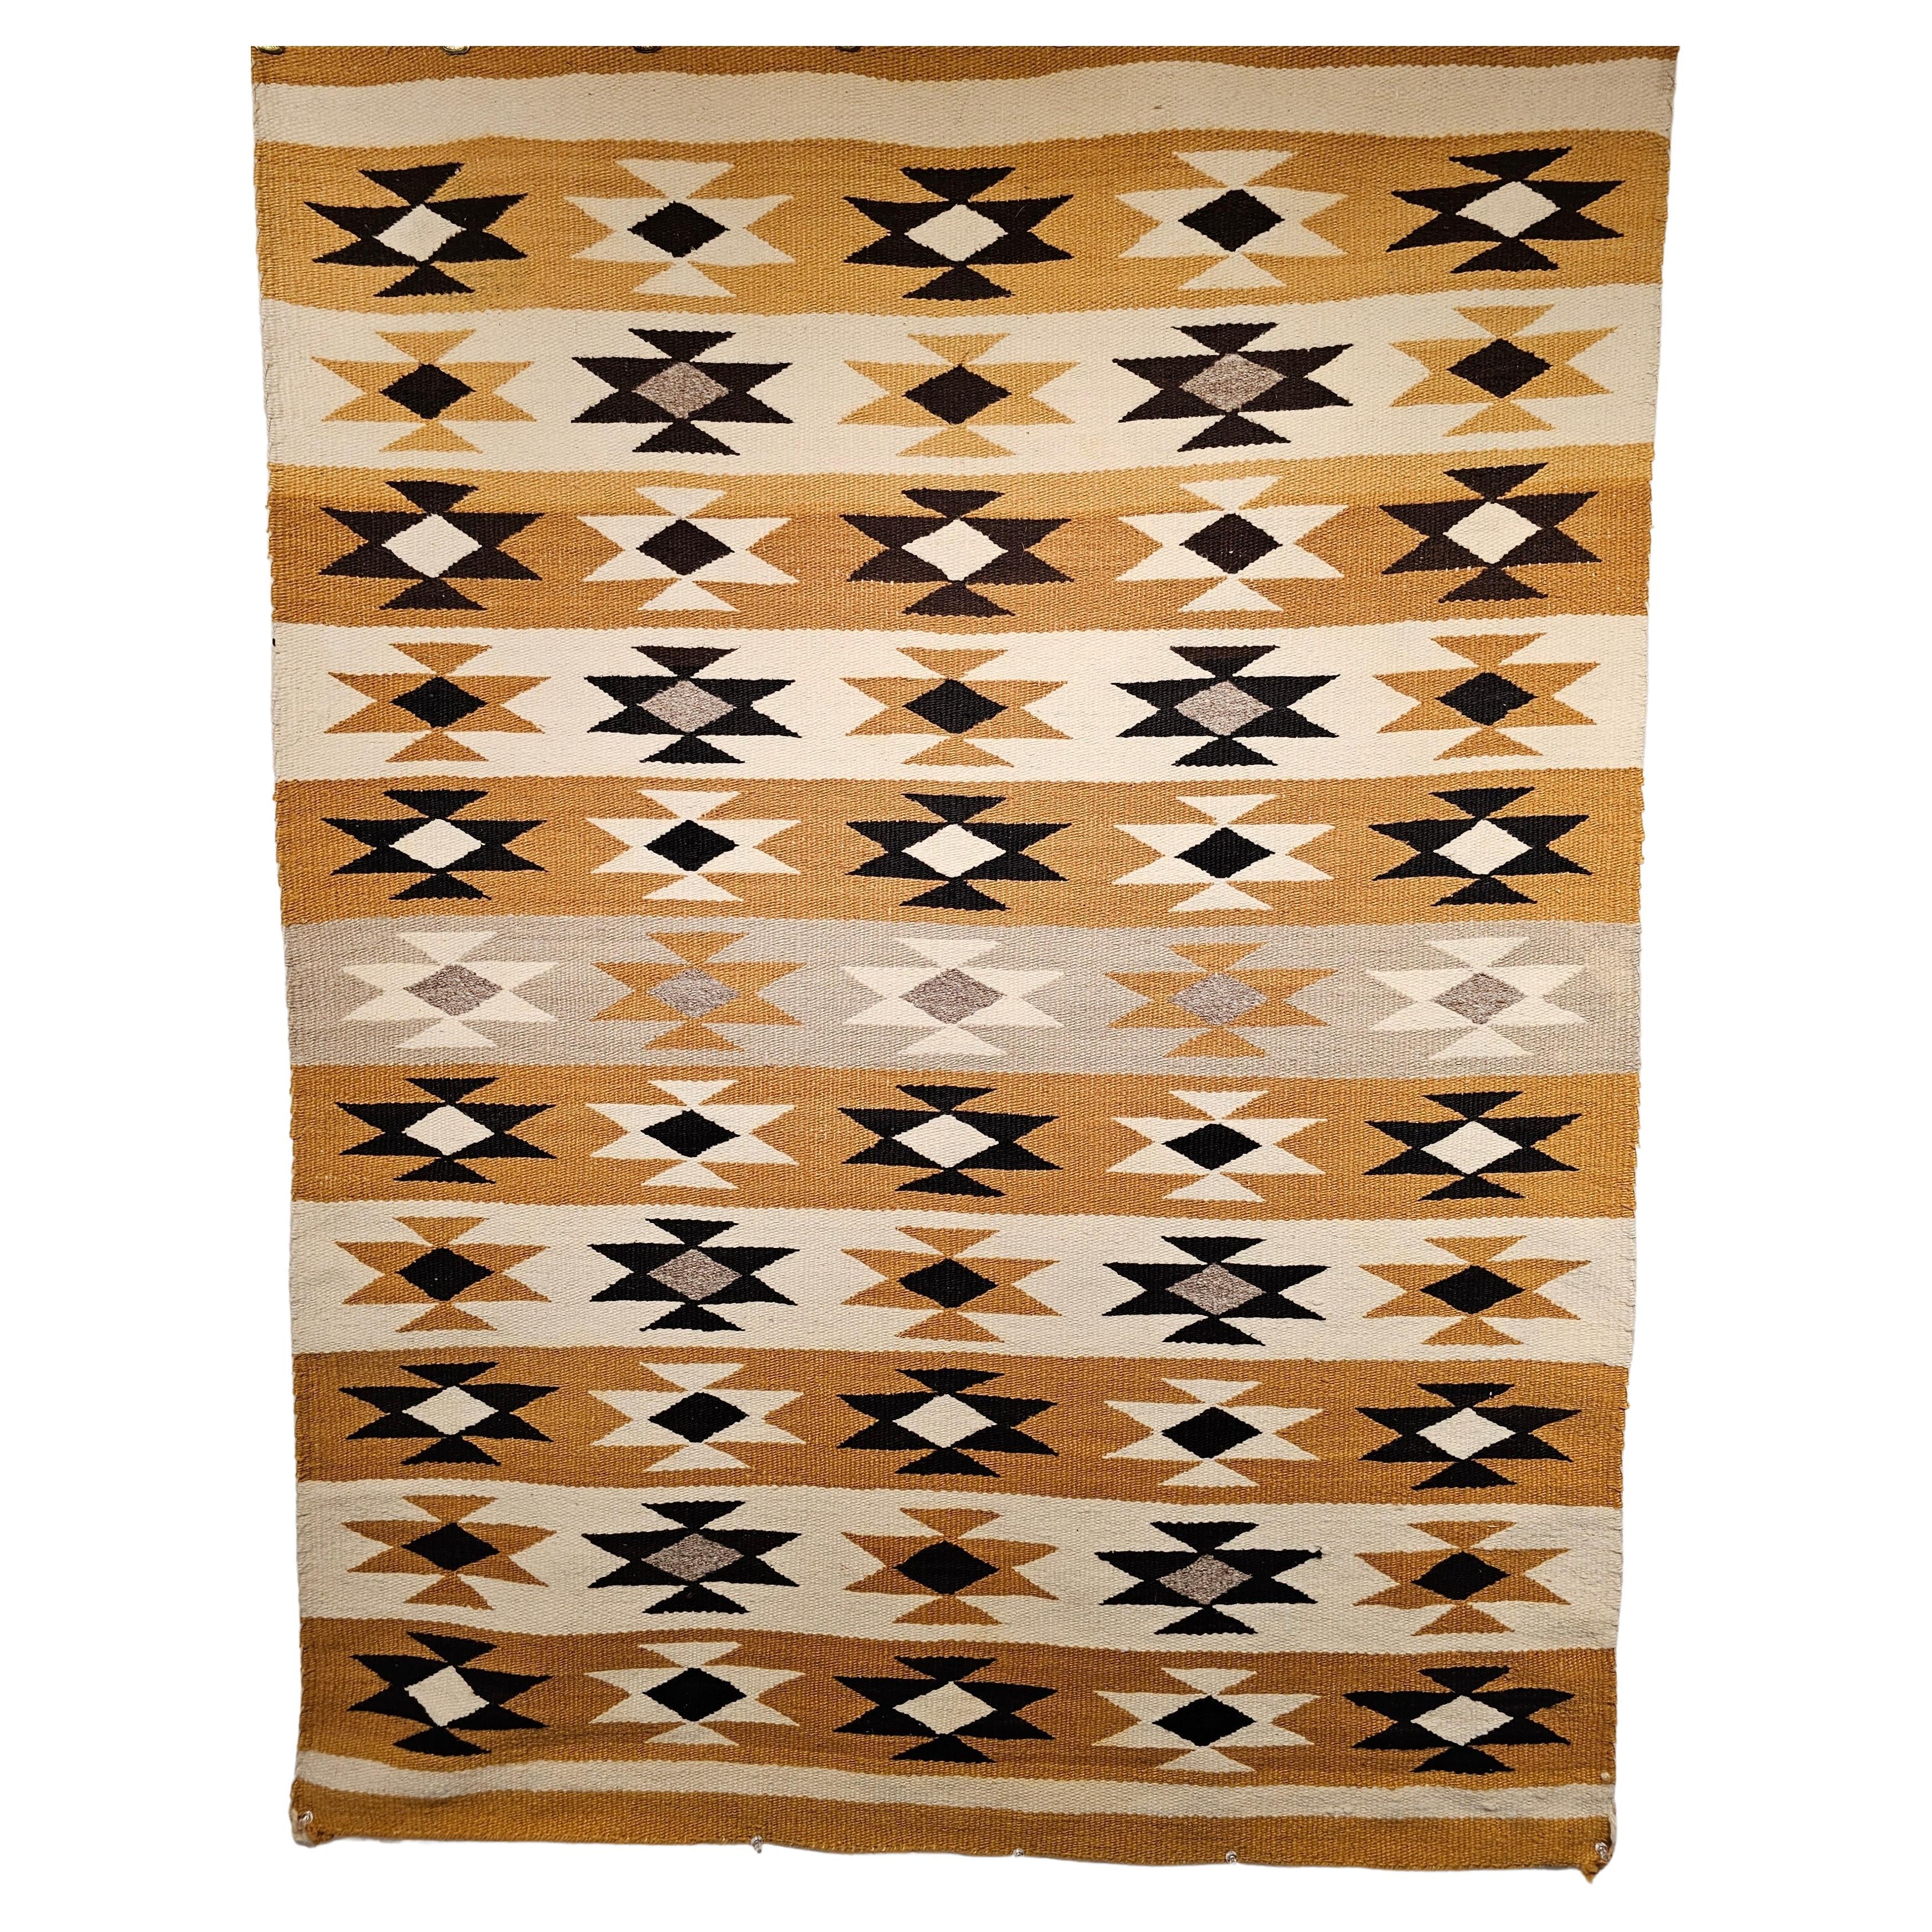 Vintage Native American Navajo Chinle Teppich in Gelb, Schwarz, Elfenbein, Grau, Braun